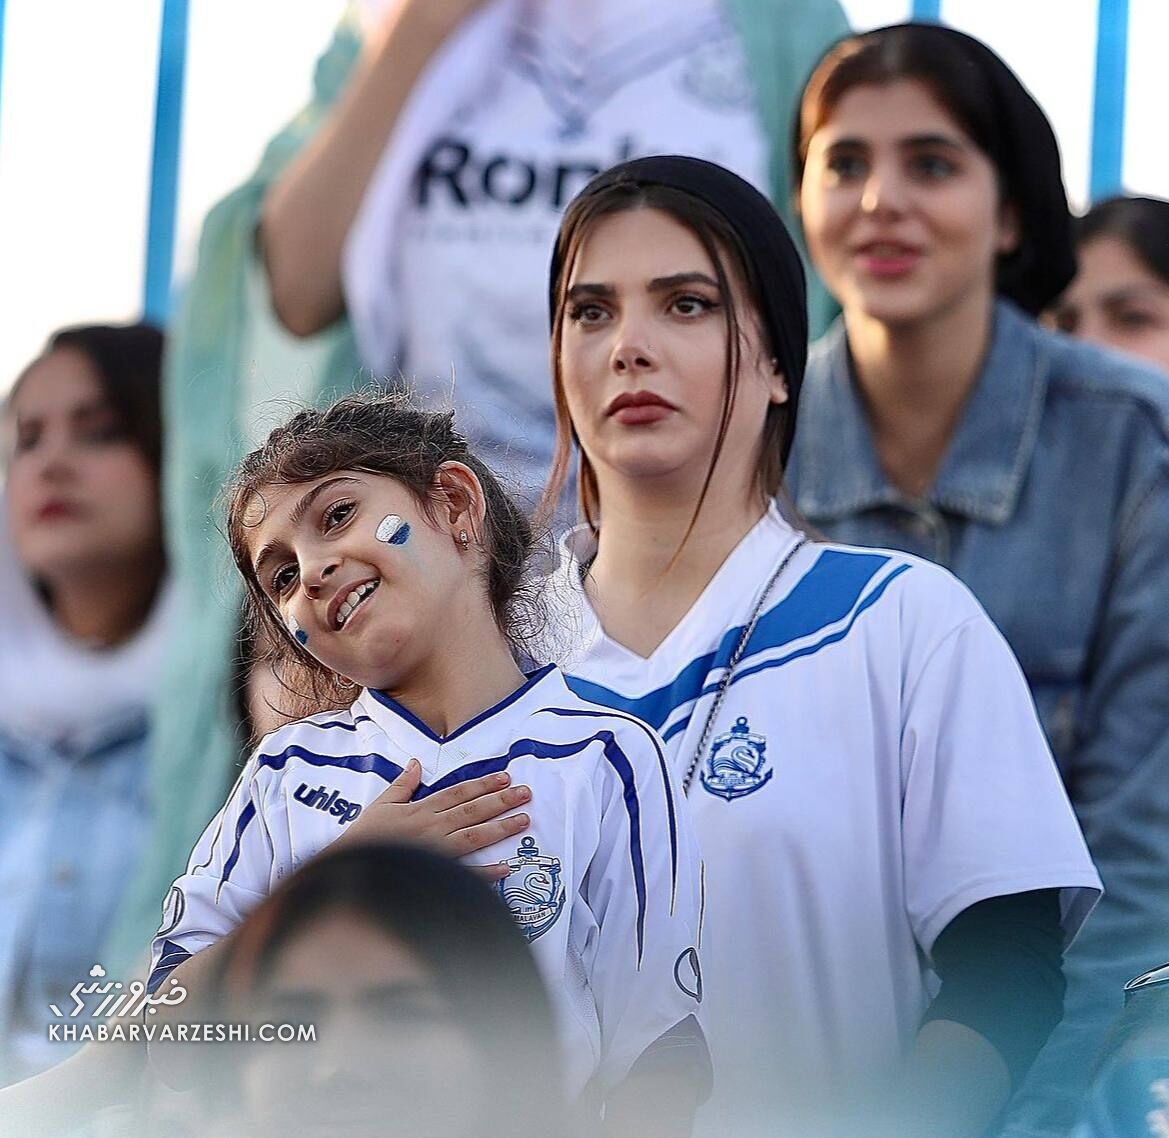 حالا دیگر فوتبالِ ایران فقط مردانه نیست!